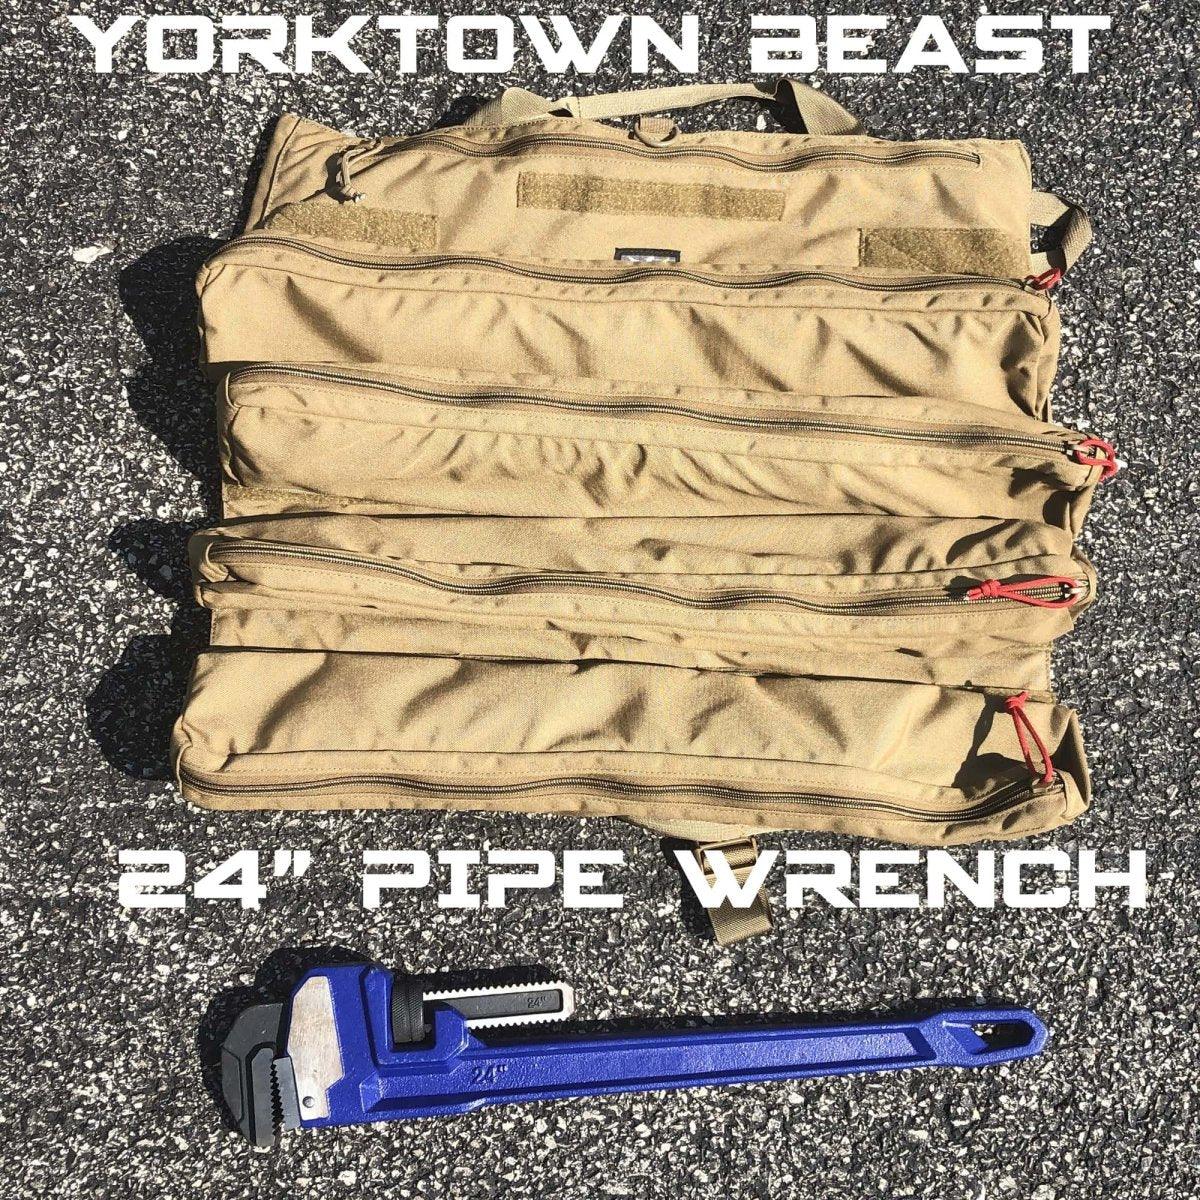 Atlas46 Yorktown Beast Quick Detach Tool Roll | Atlas46 | A247 Gear